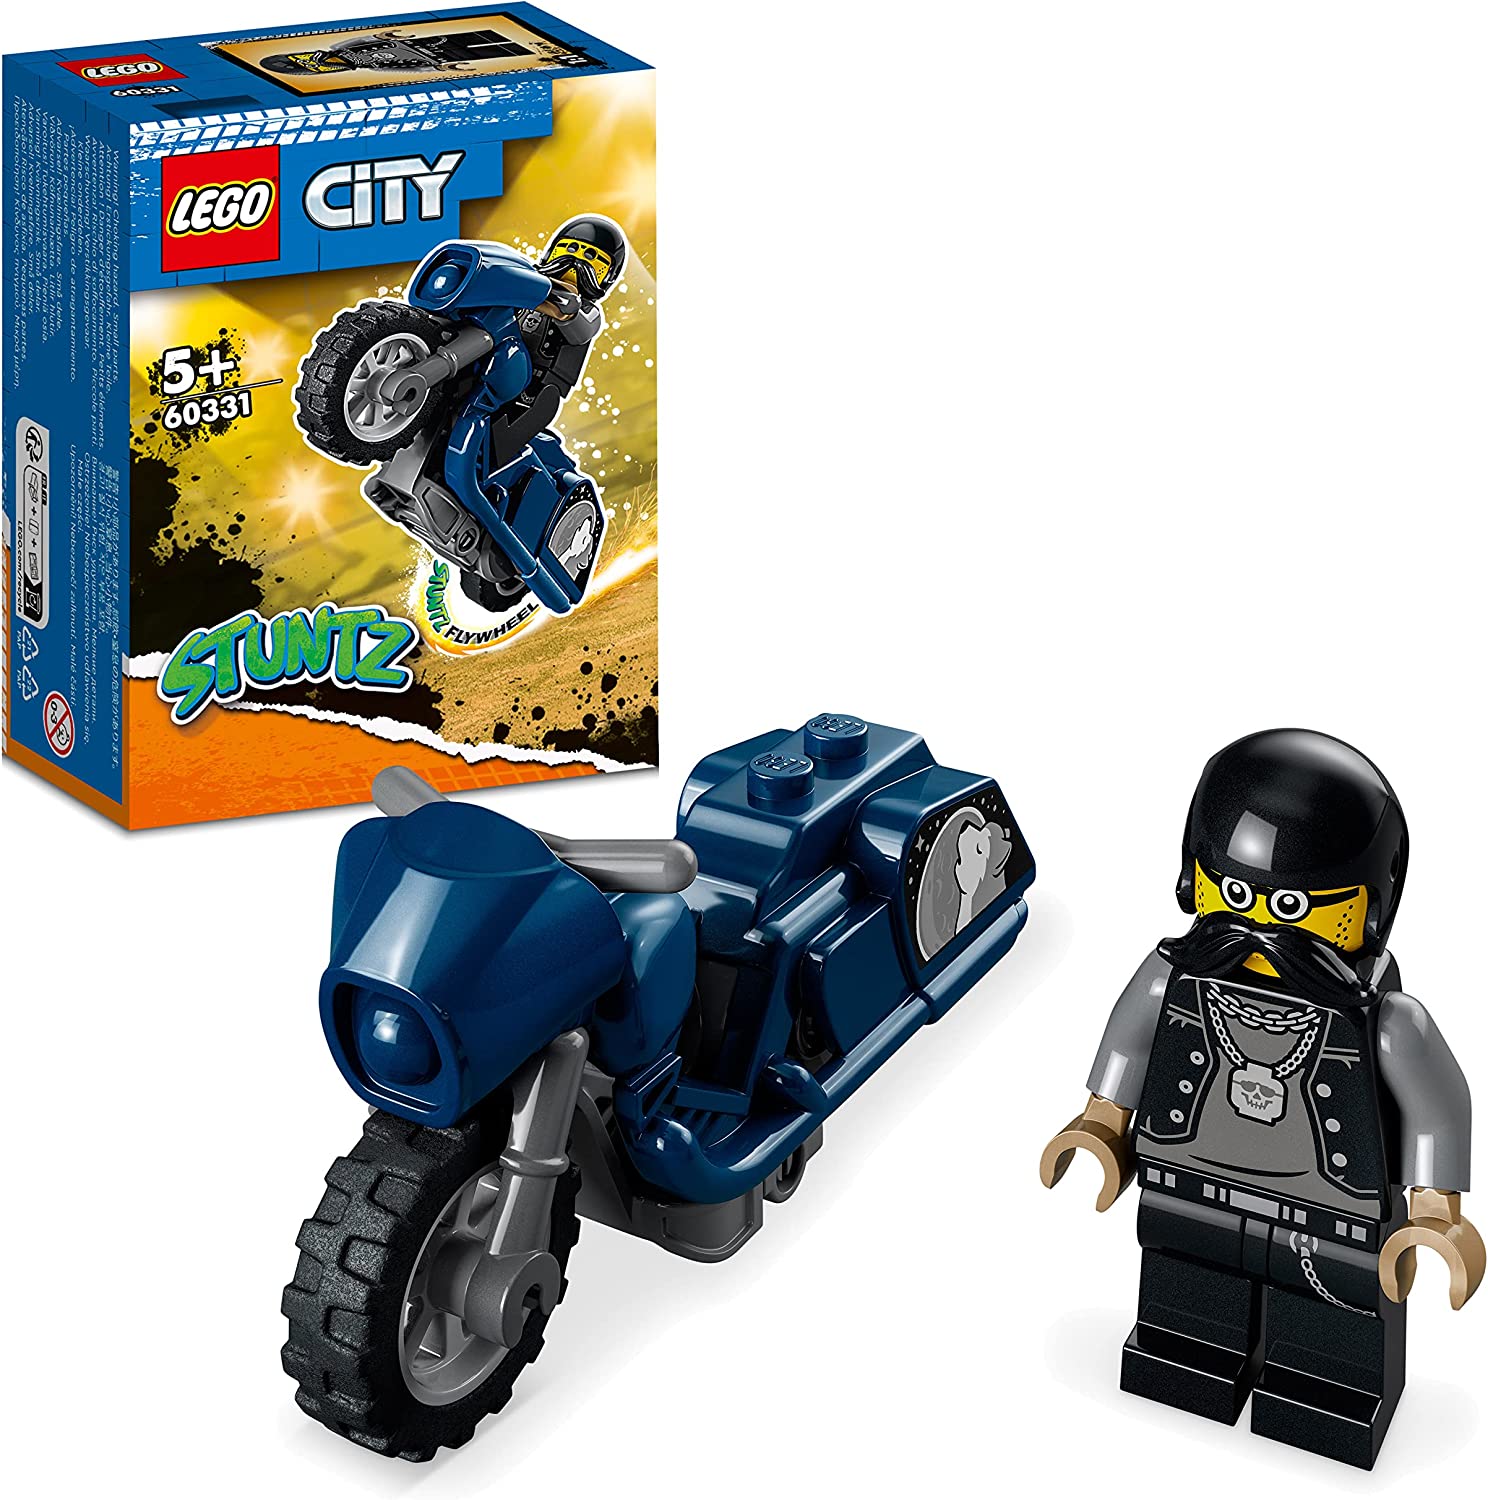 LEGO City Stuntz Stunt Bike da Touring, Moto Giocattolo Carica e Vai con  Minifigure, Giochi per Bambini dai 5 Anni in su, Ottima